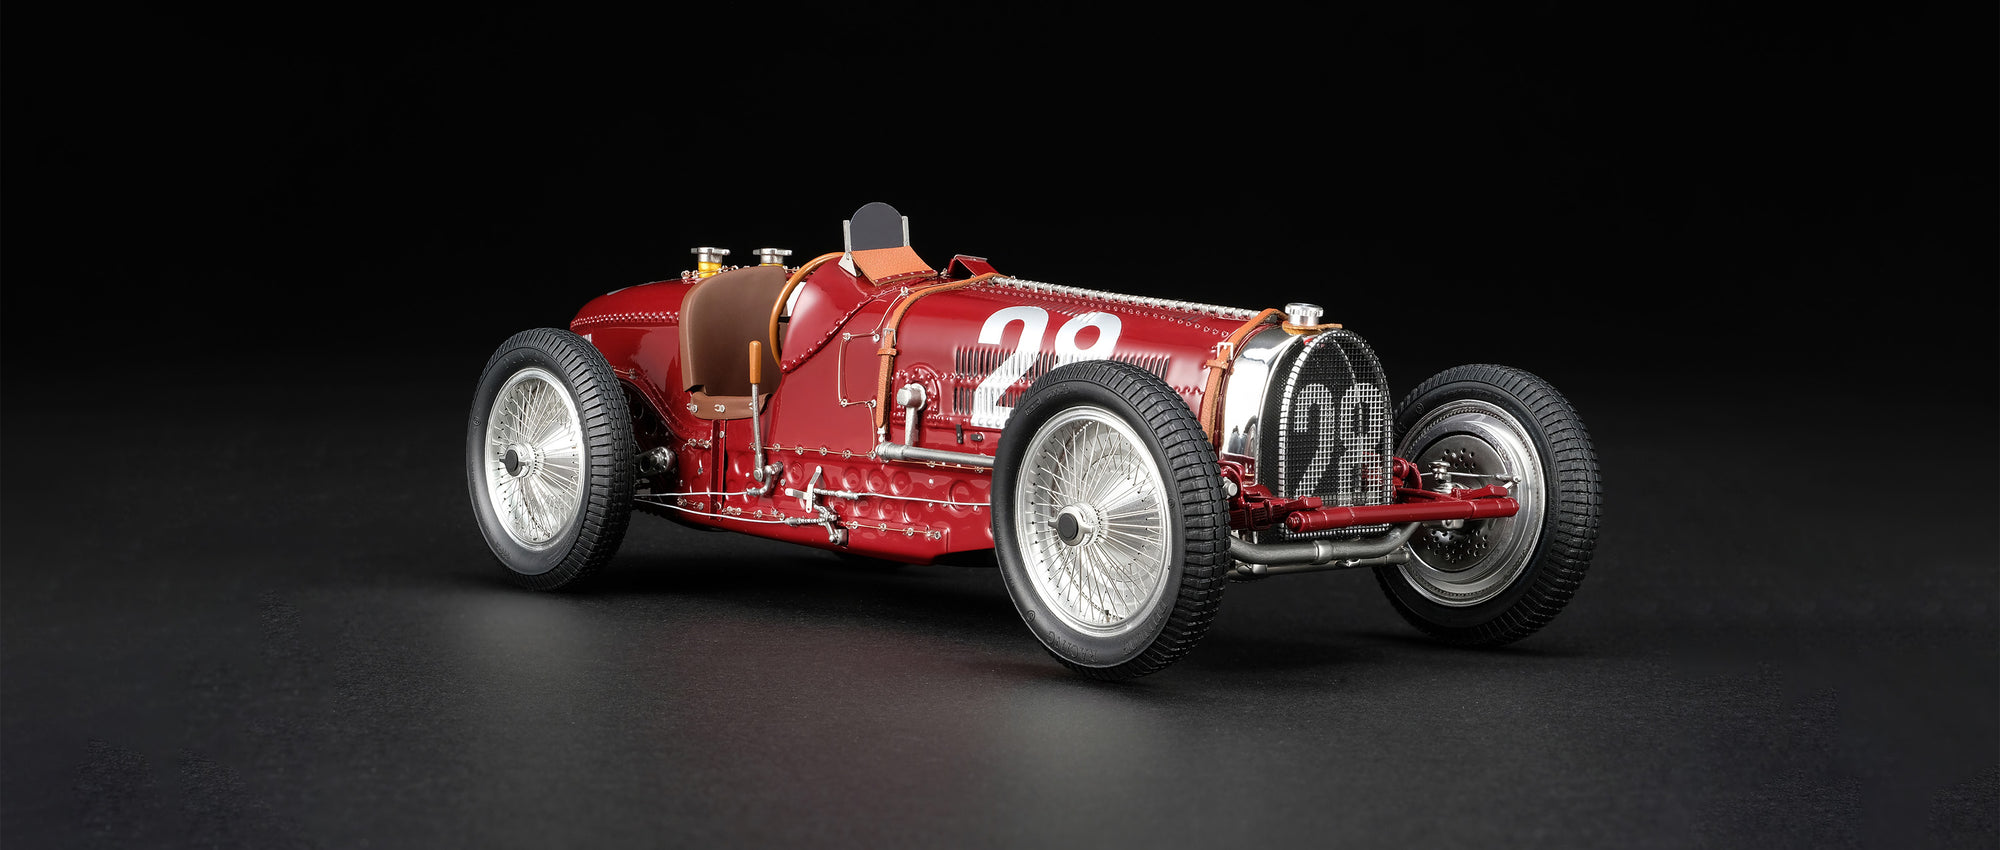 Bugatti Type 59 - GP de Mónaco de 1934 - Nuvolari